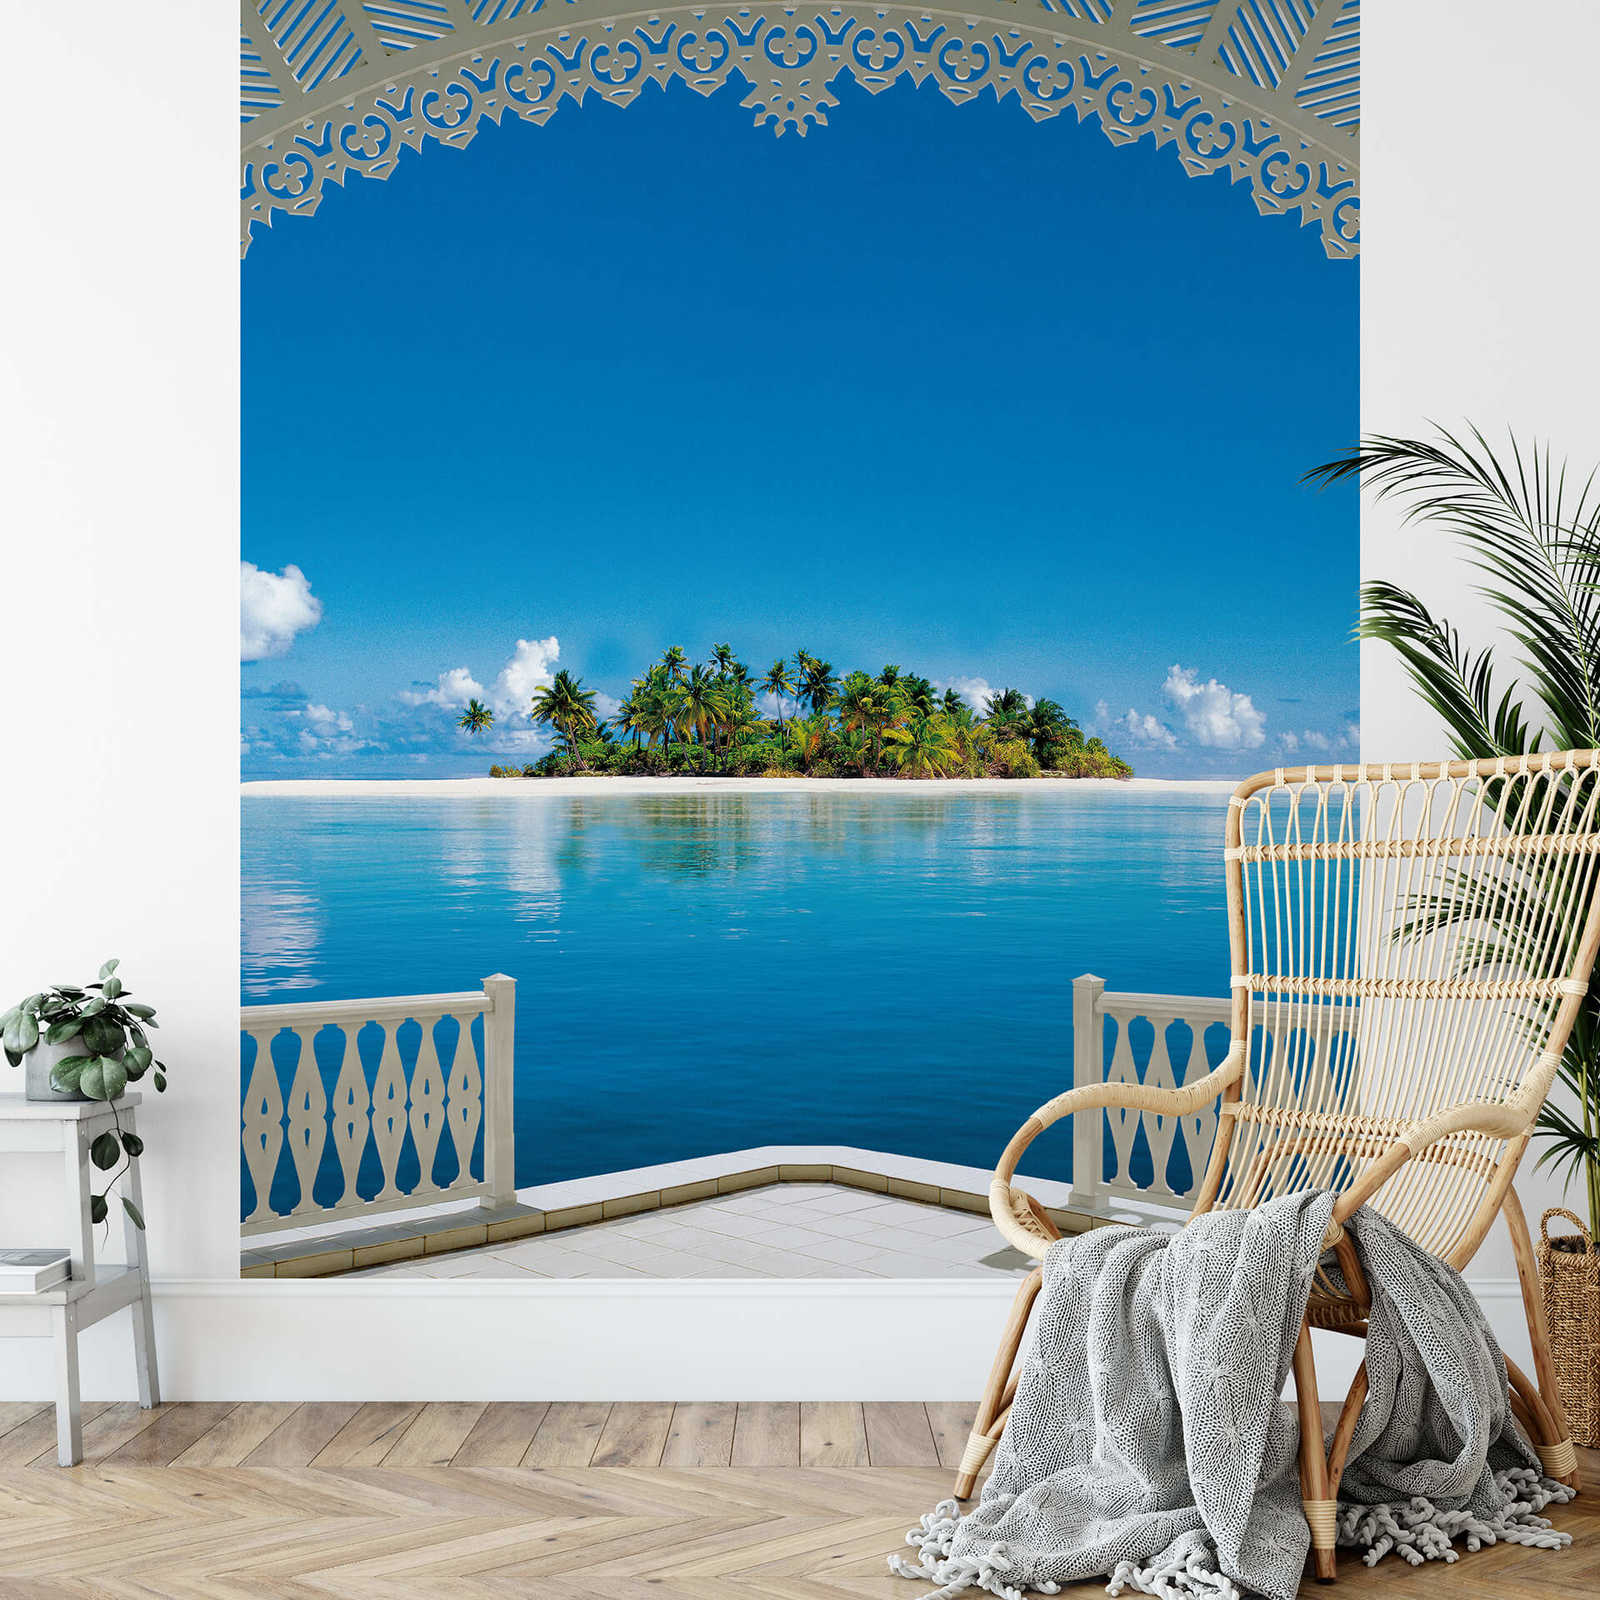             Papier peint panoramique vue tropicale de l'île, portrait
        